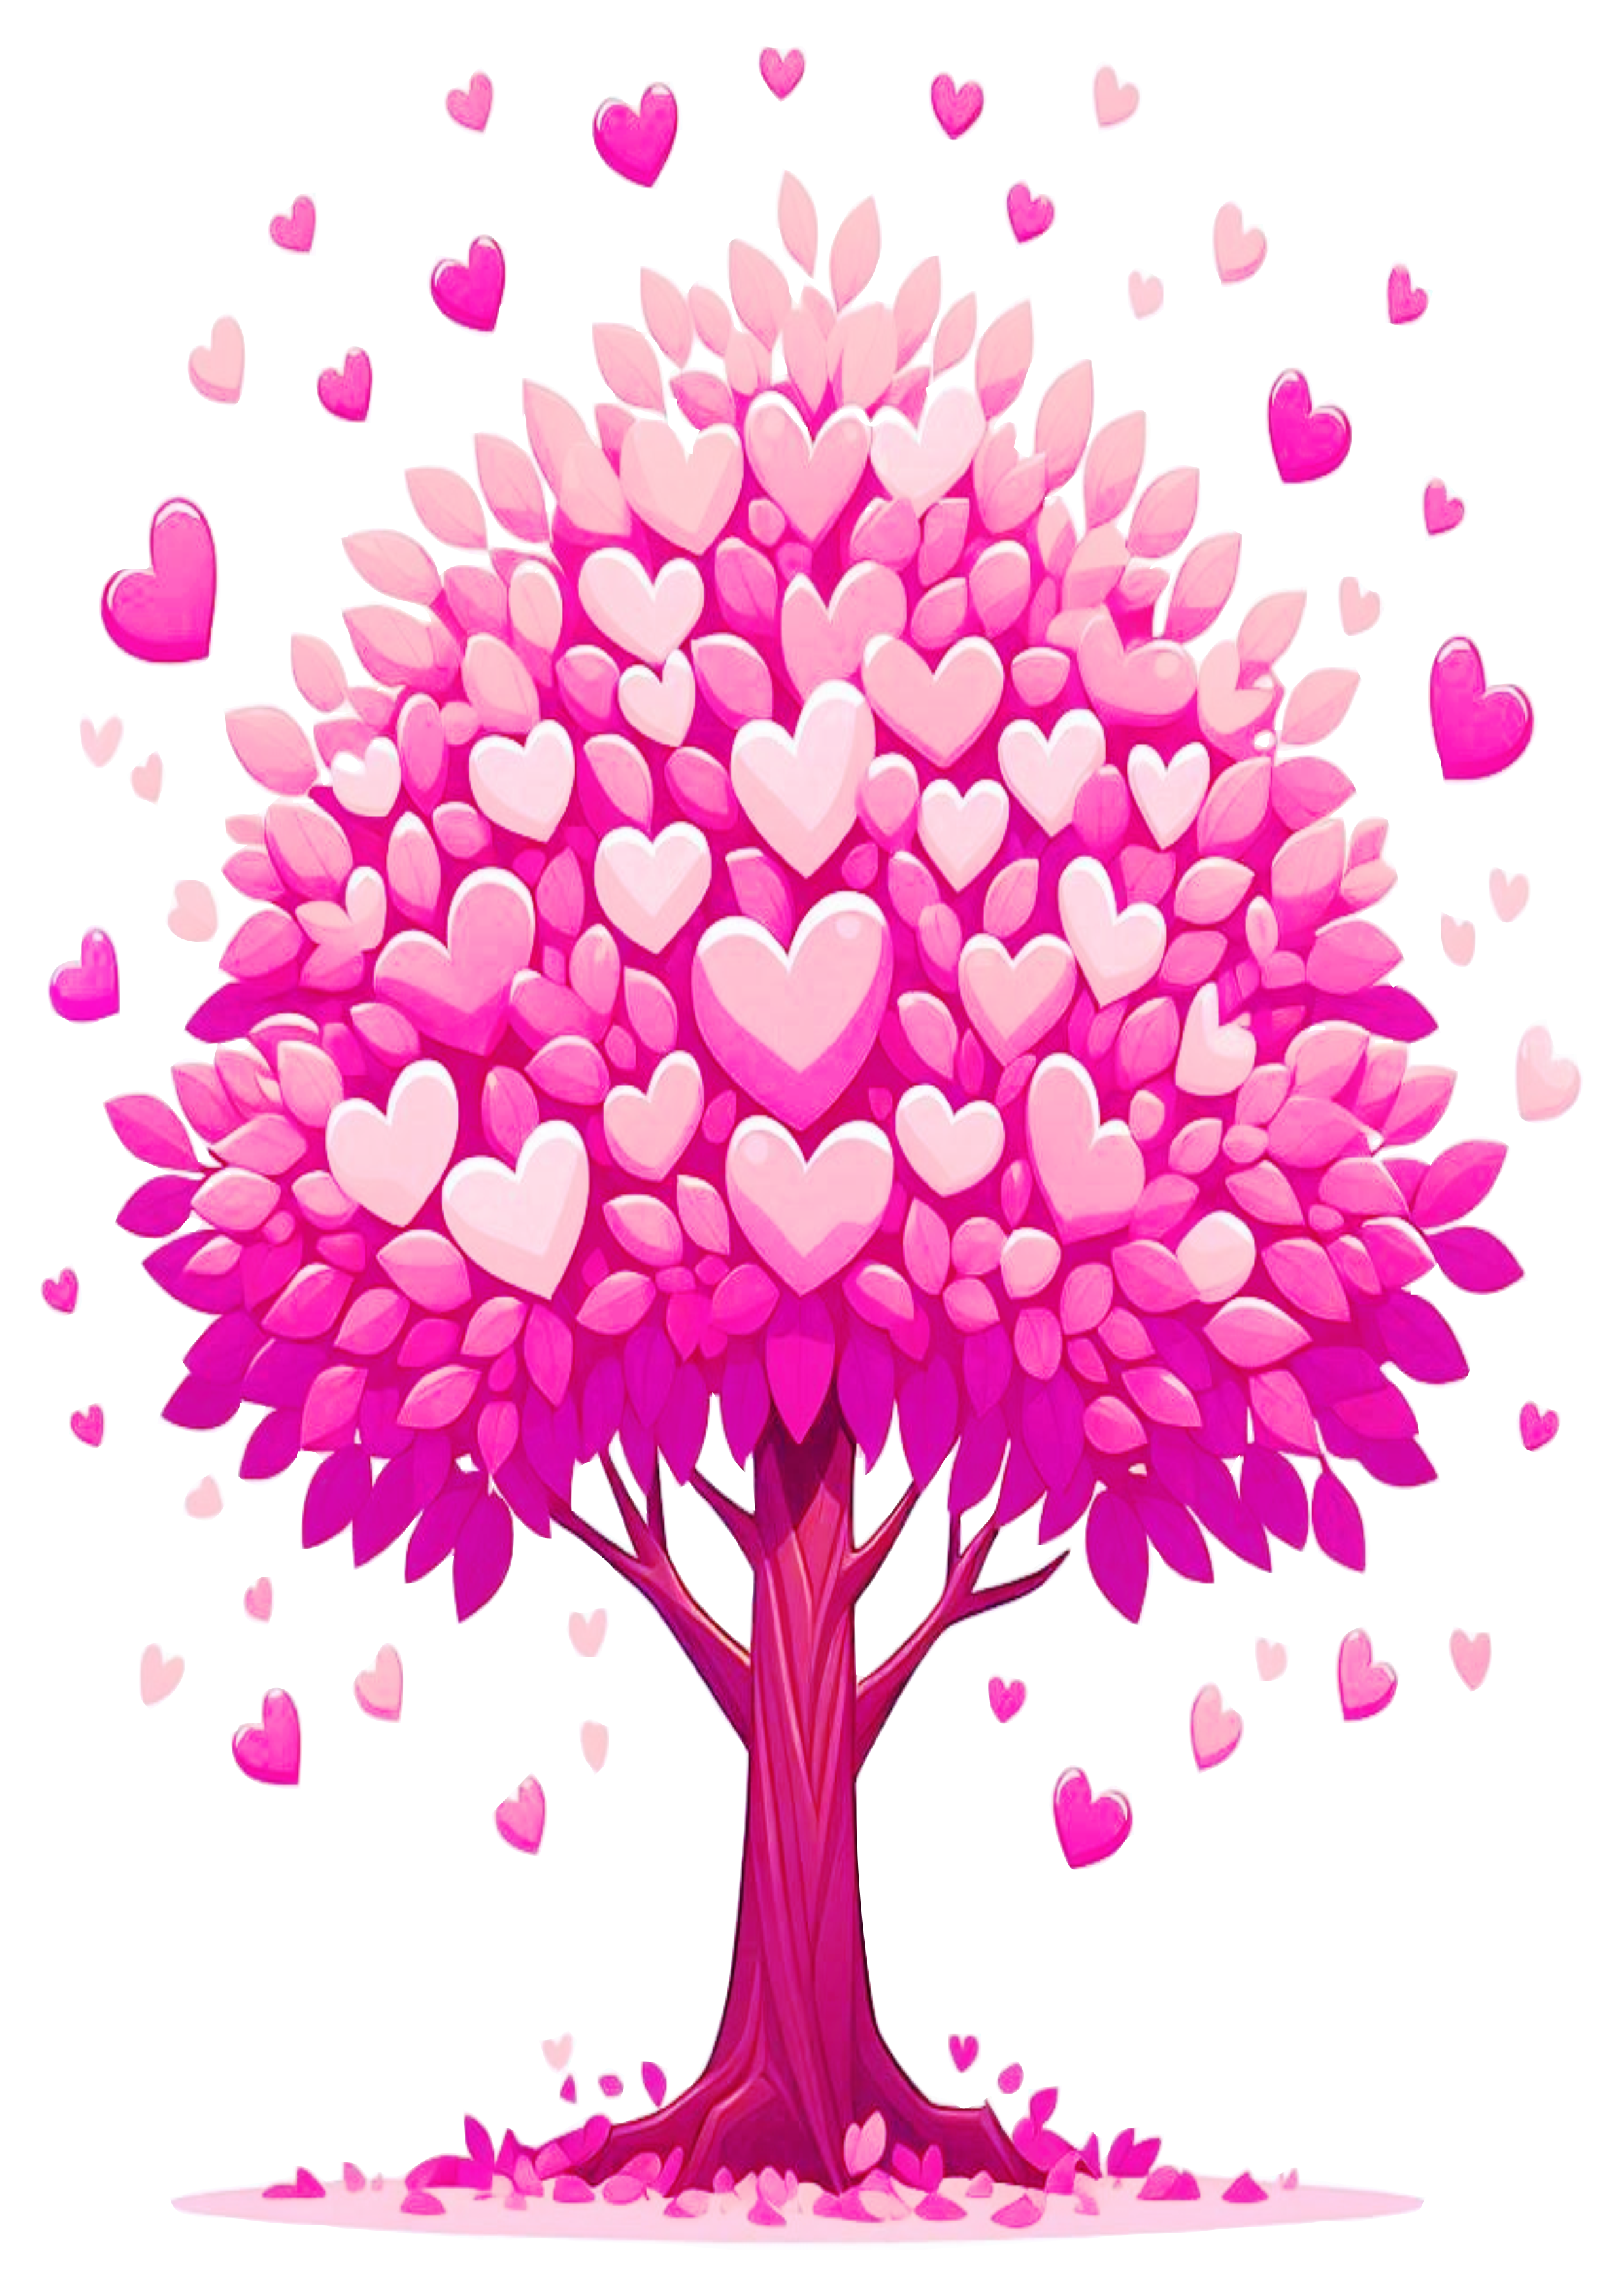 Árvore rosa com folhas em formato de coração desenho bonito fundo transparente ng